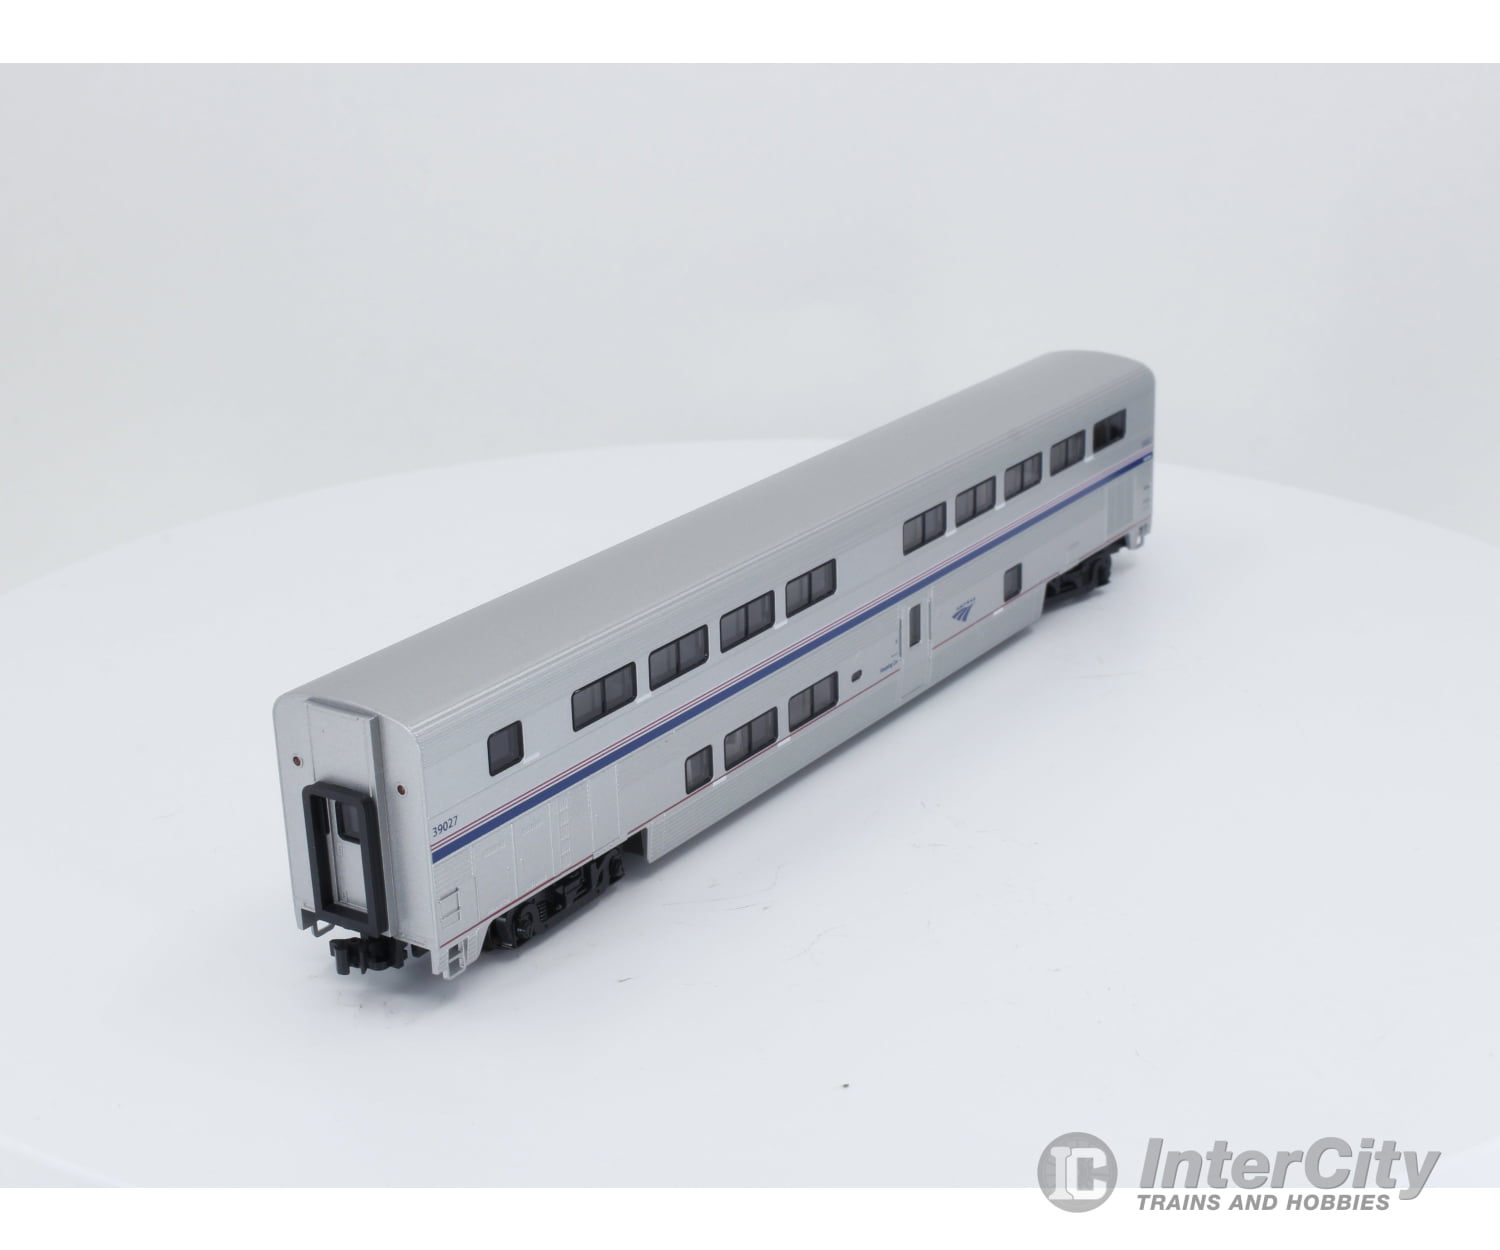 Kato 156-0954 N Superliner Ii Transition Sleeper Car Phase Ivb Amtrak (Amtk) 39027 Passenger Cars